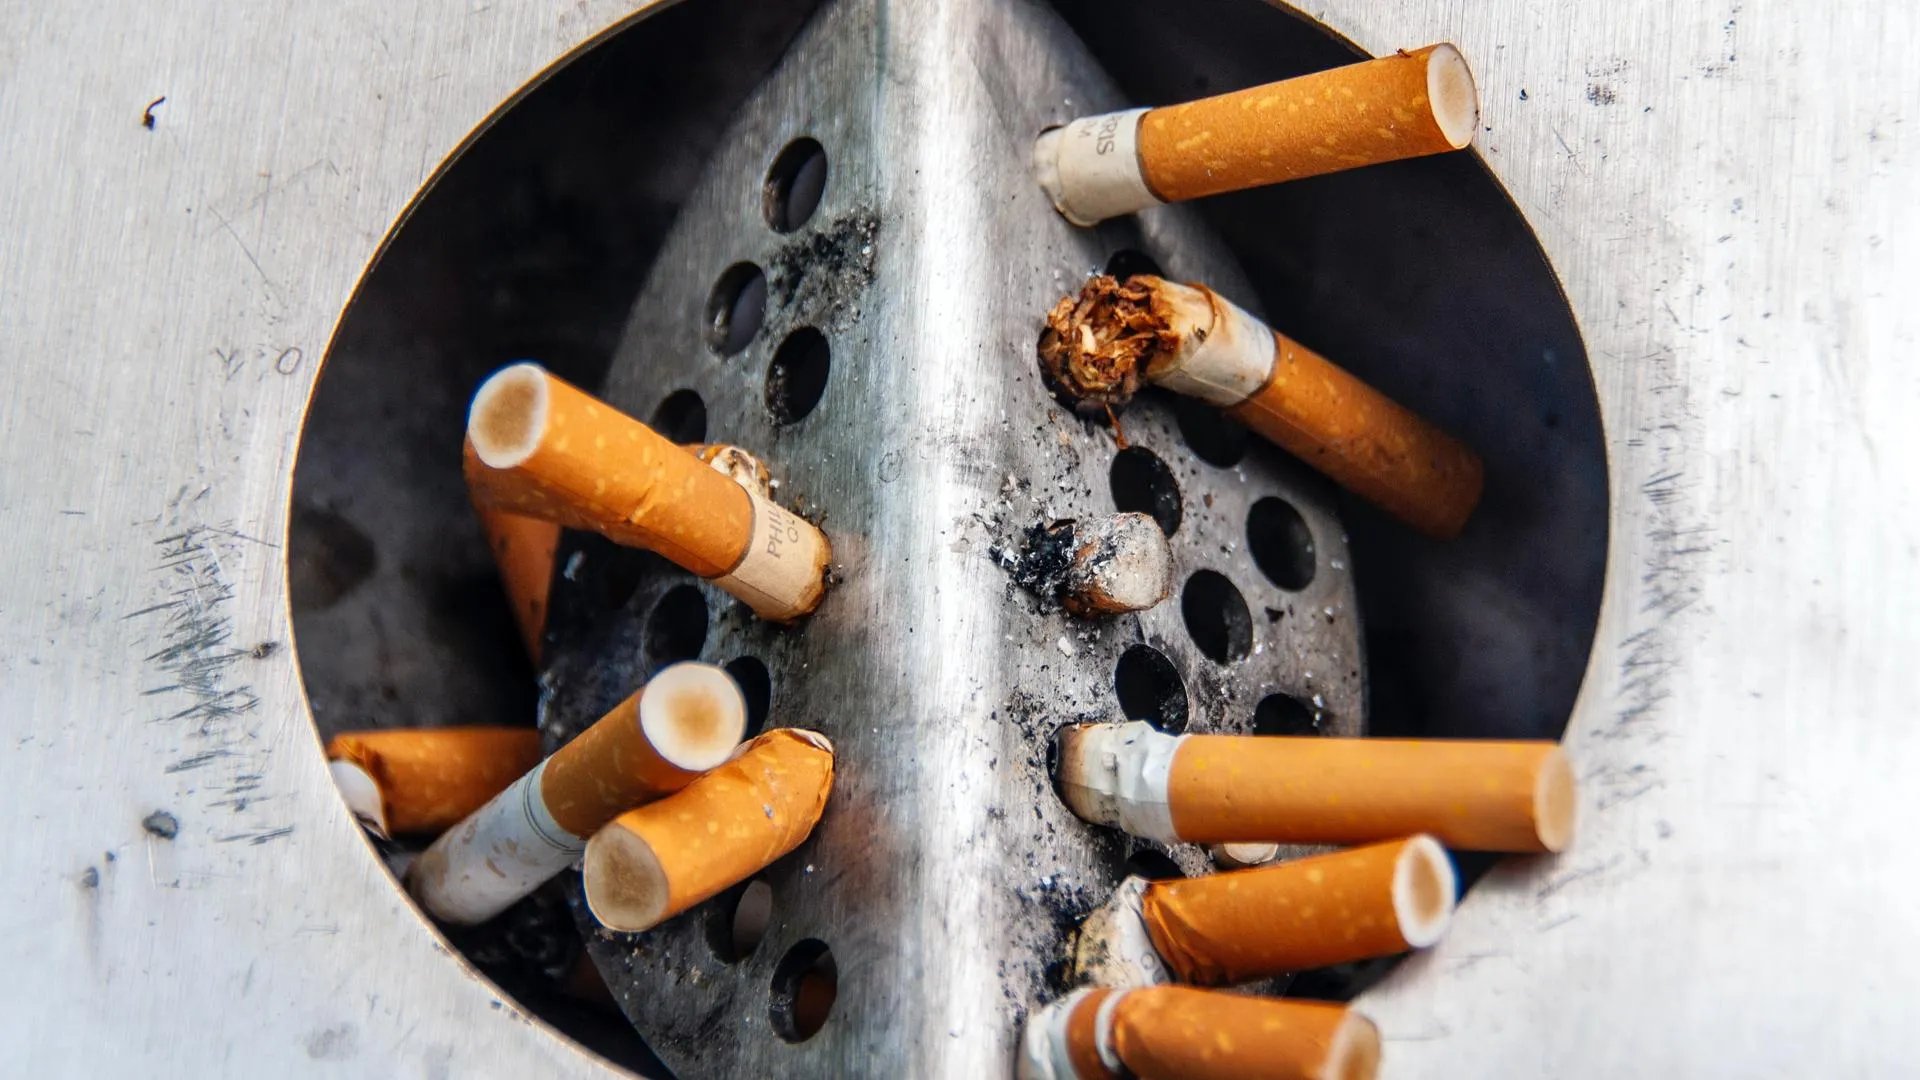 Табачный рынок уходит в тень: в России снизились доходы от акцизов на сигареты